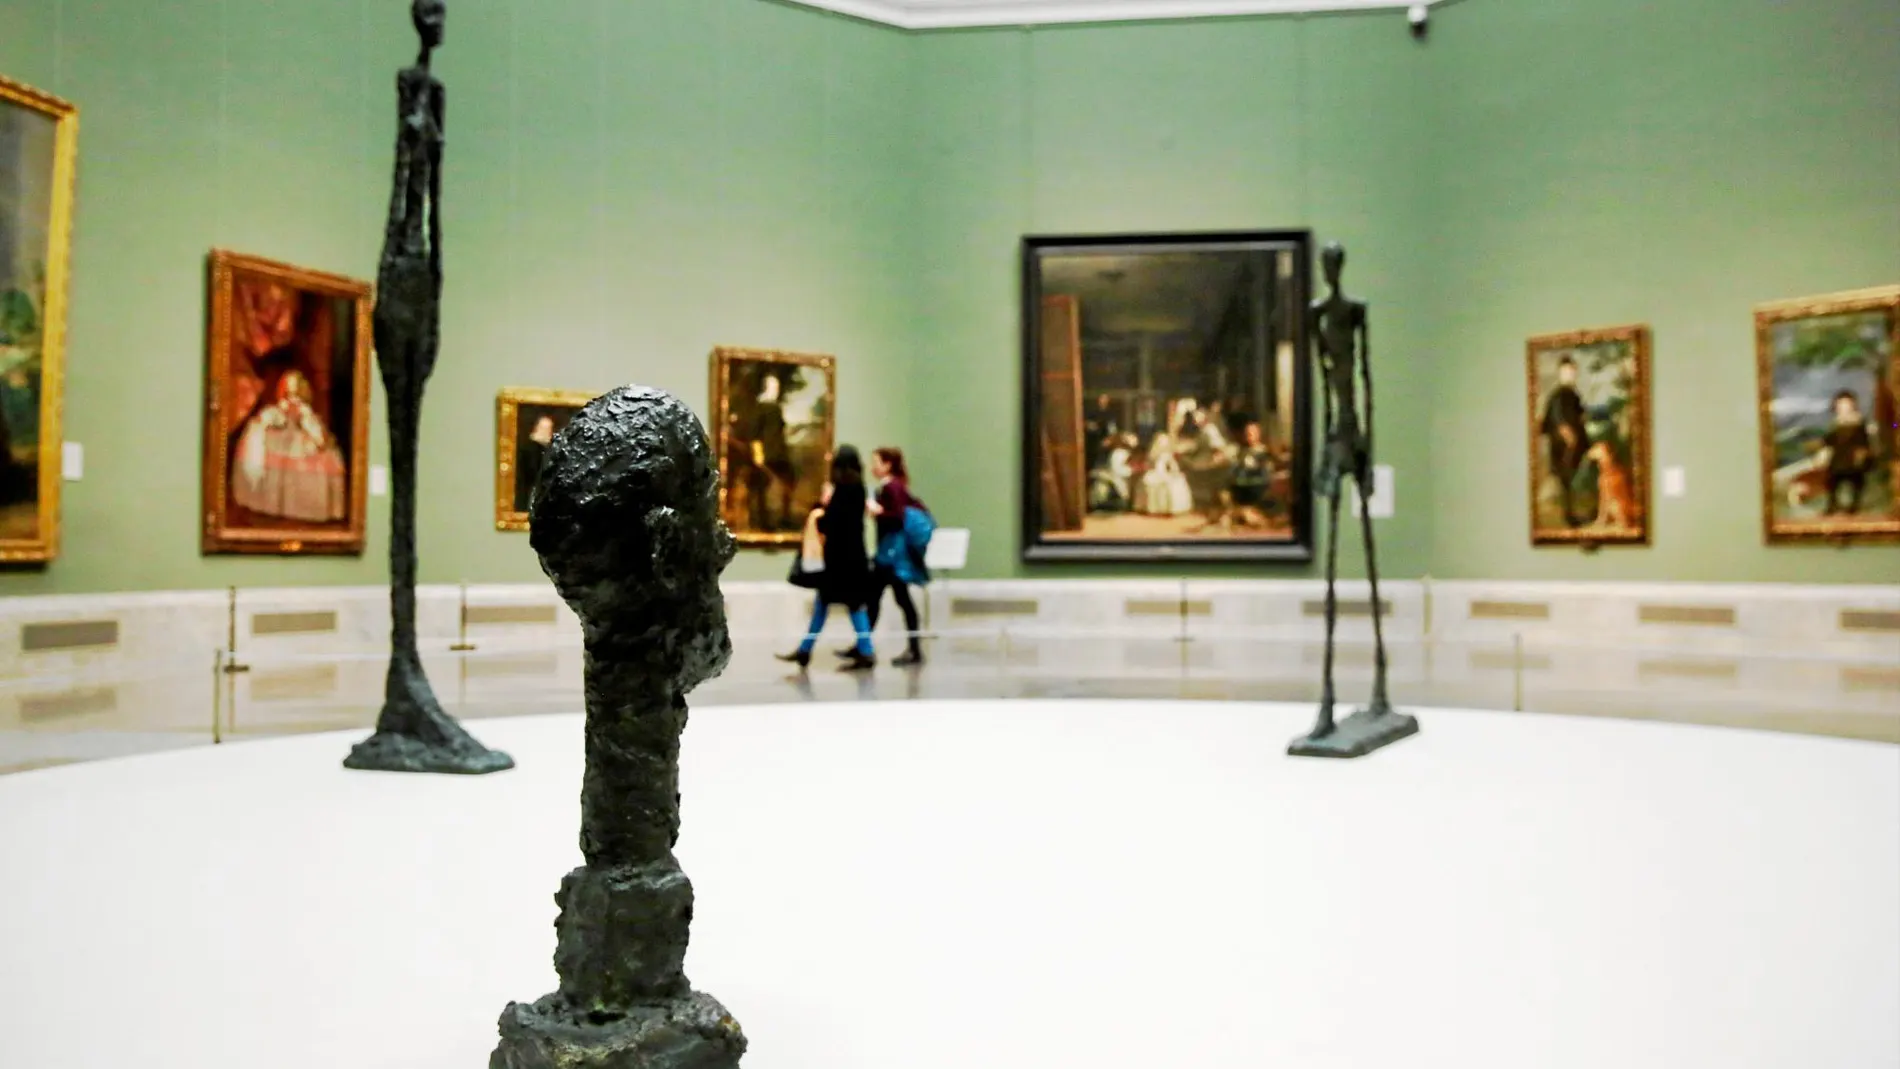 Cuatro piezas de Giacometti centran la atención de la sala de «Las meninas»: sus obras se miden con el conde duque de Olivares, Felipe IV o Mariana de Austria. Foto: Cristina Bejarano